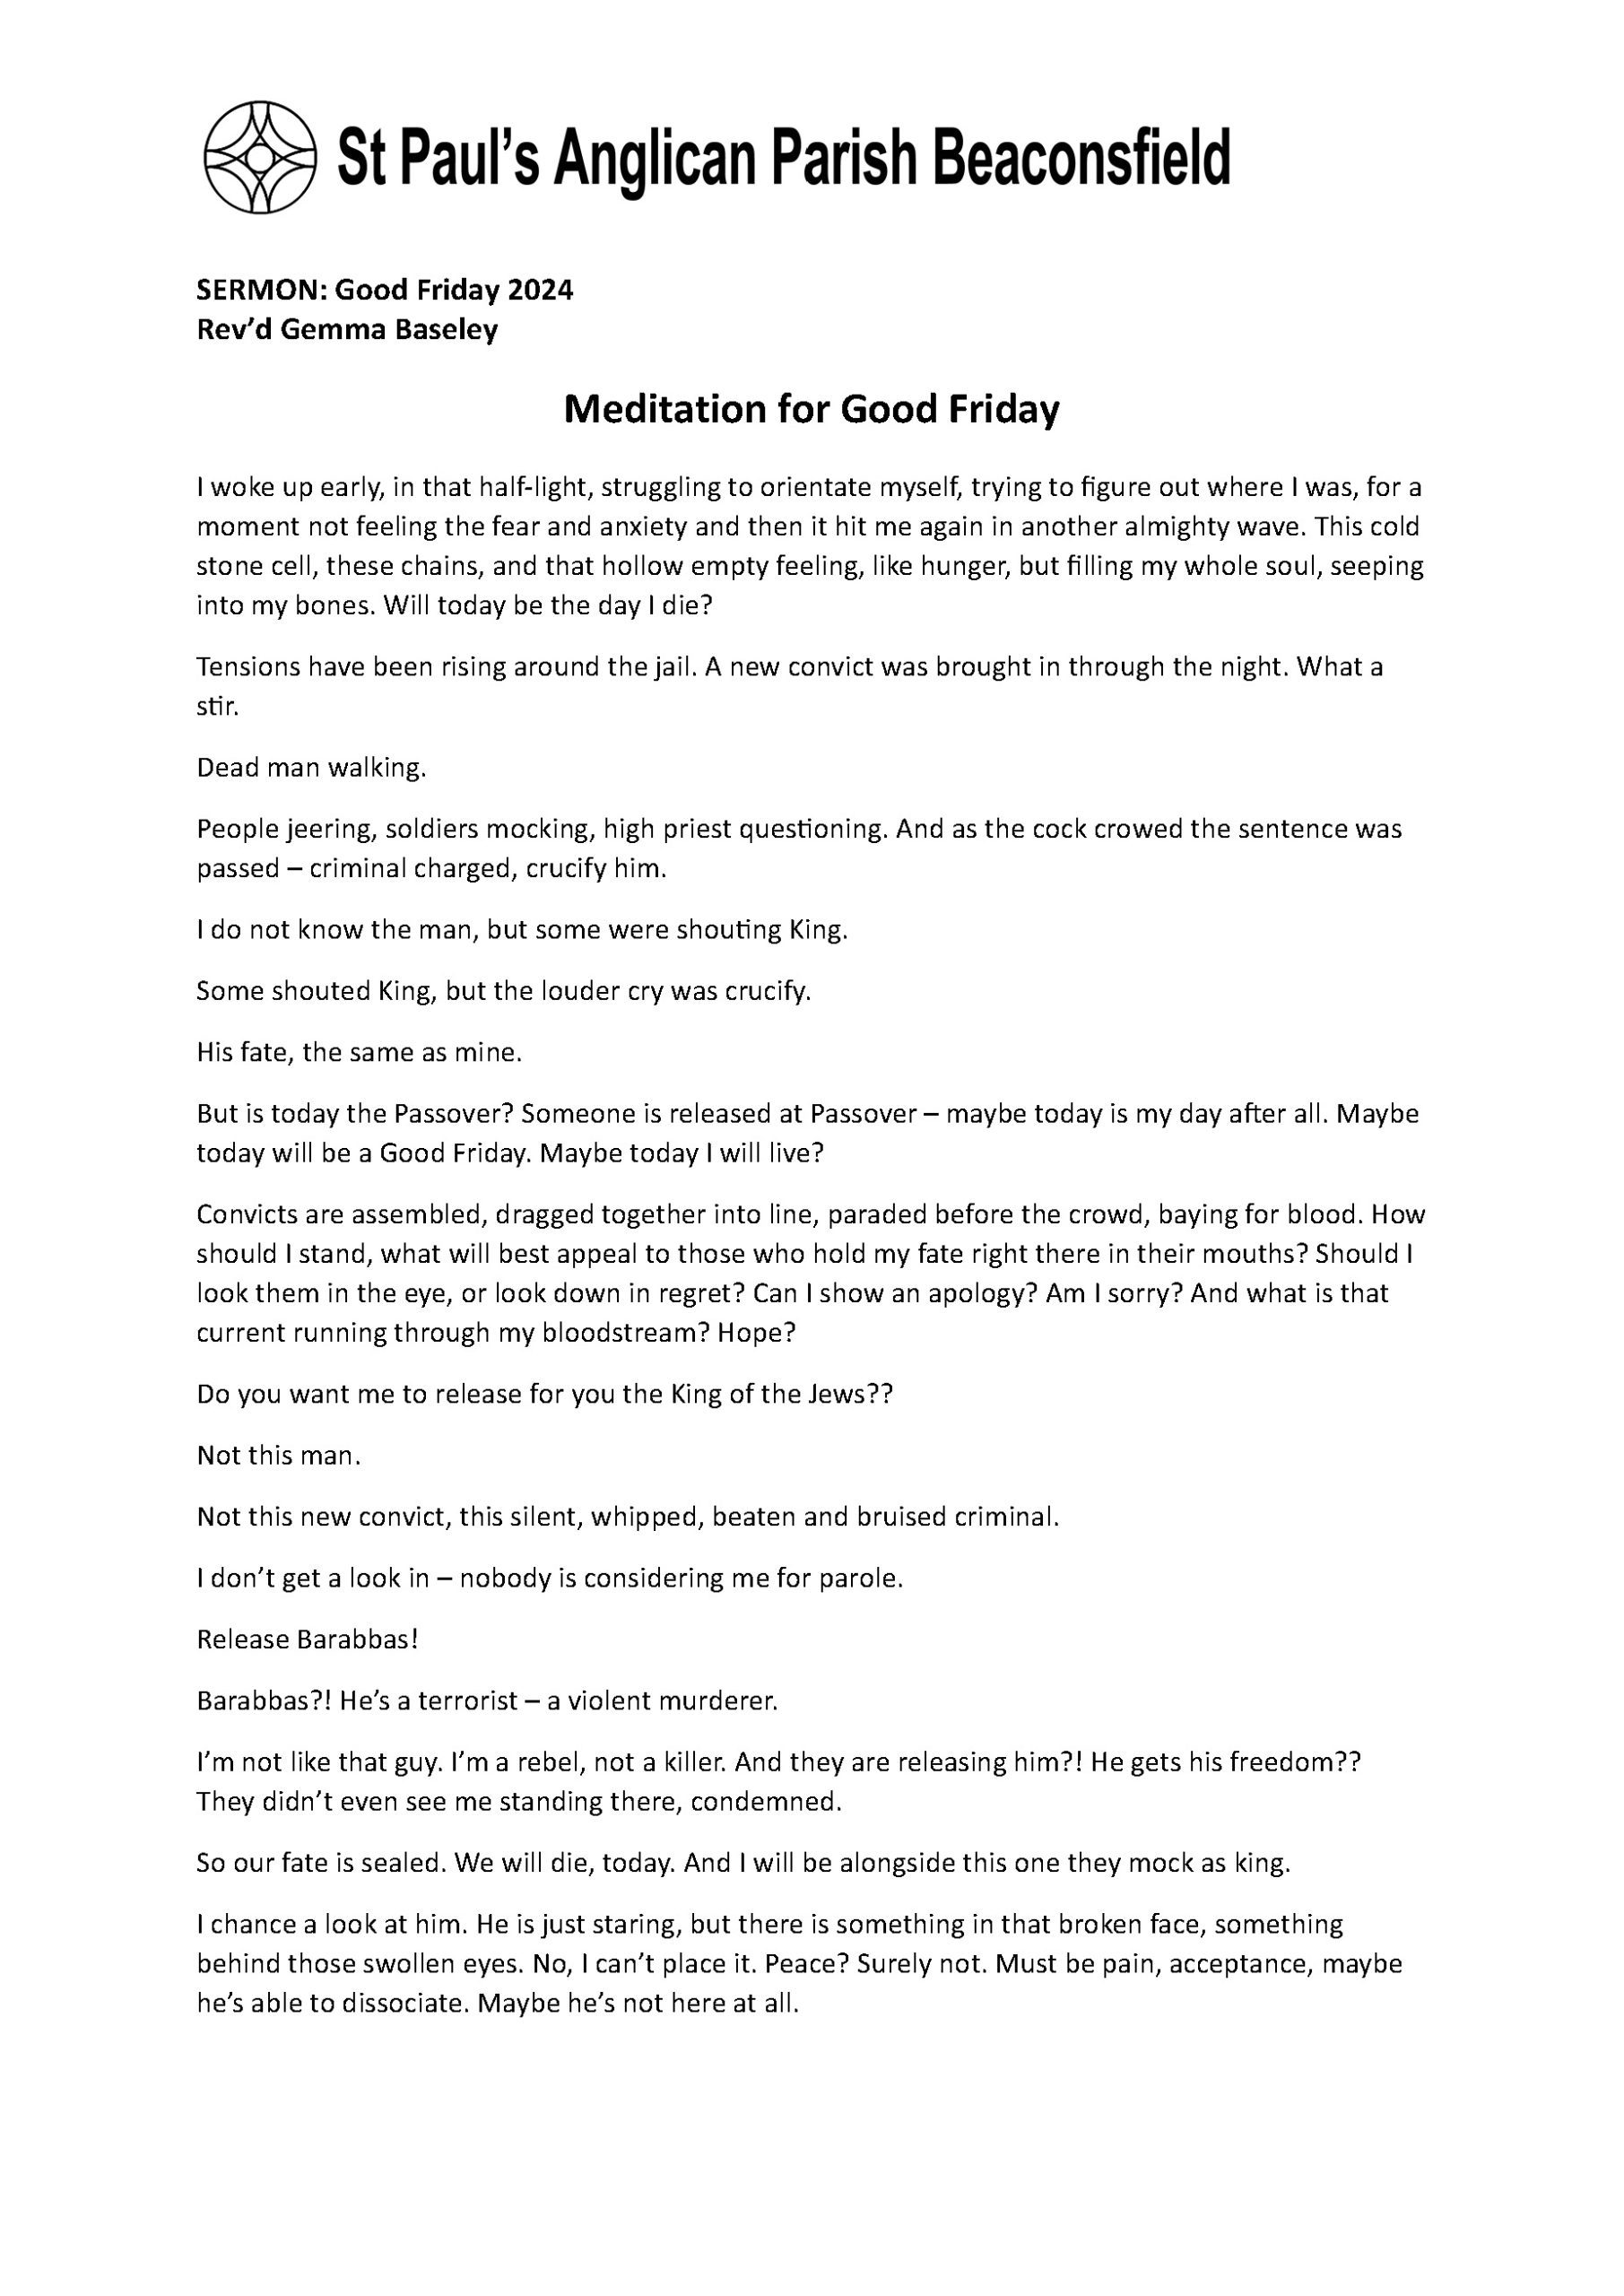 Meditation for Good Friday 2024